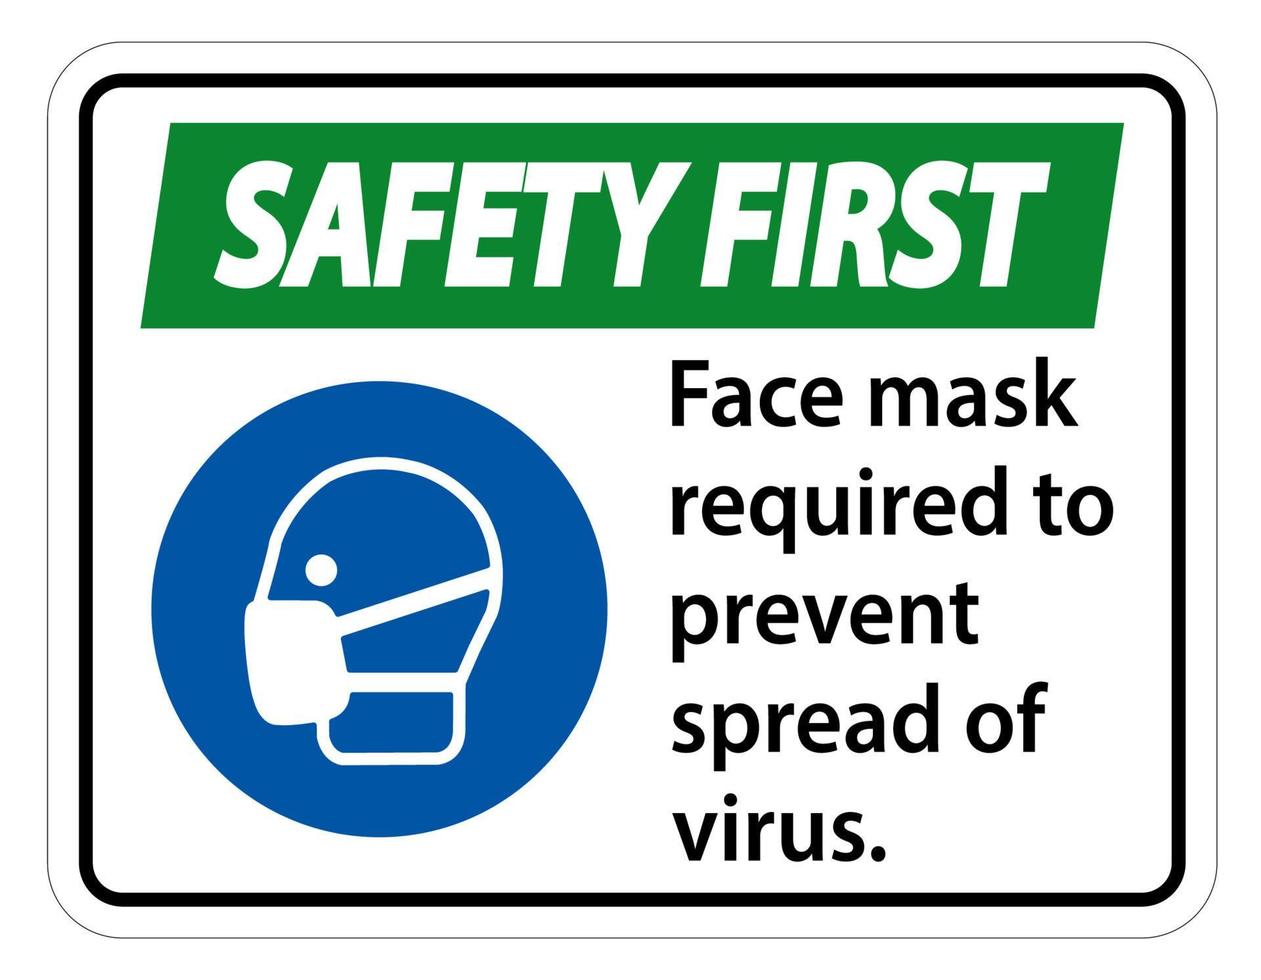 La seguridad es la primera mascarilla necesaria para evitar la propagación del virus signo sobre fondo blanco. vector